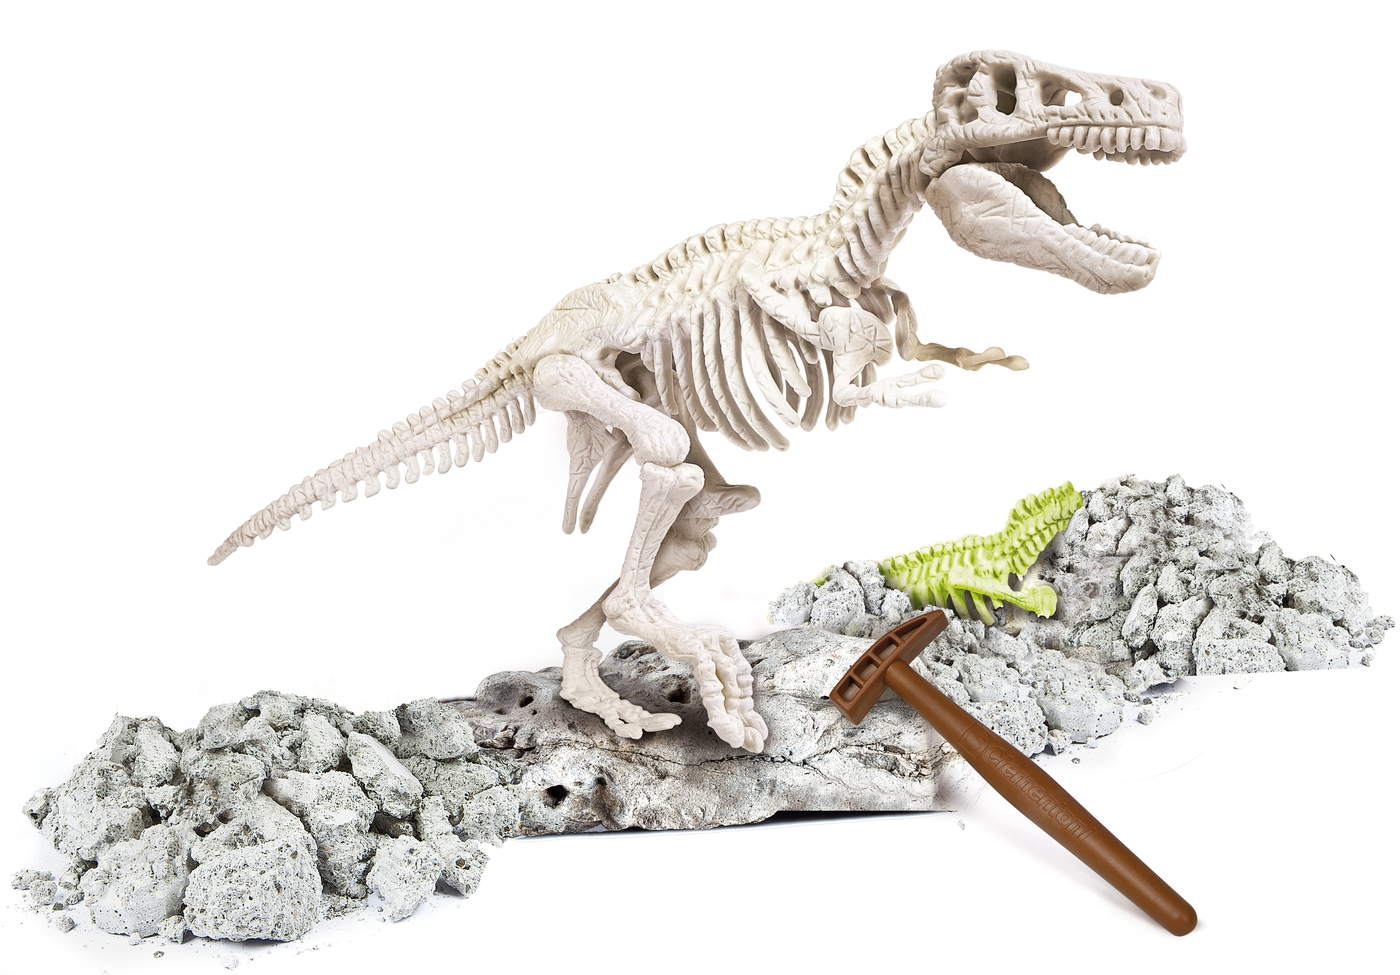 Clementoni archeofun Kit de esqueleto de T-Rex Dinosaurio 